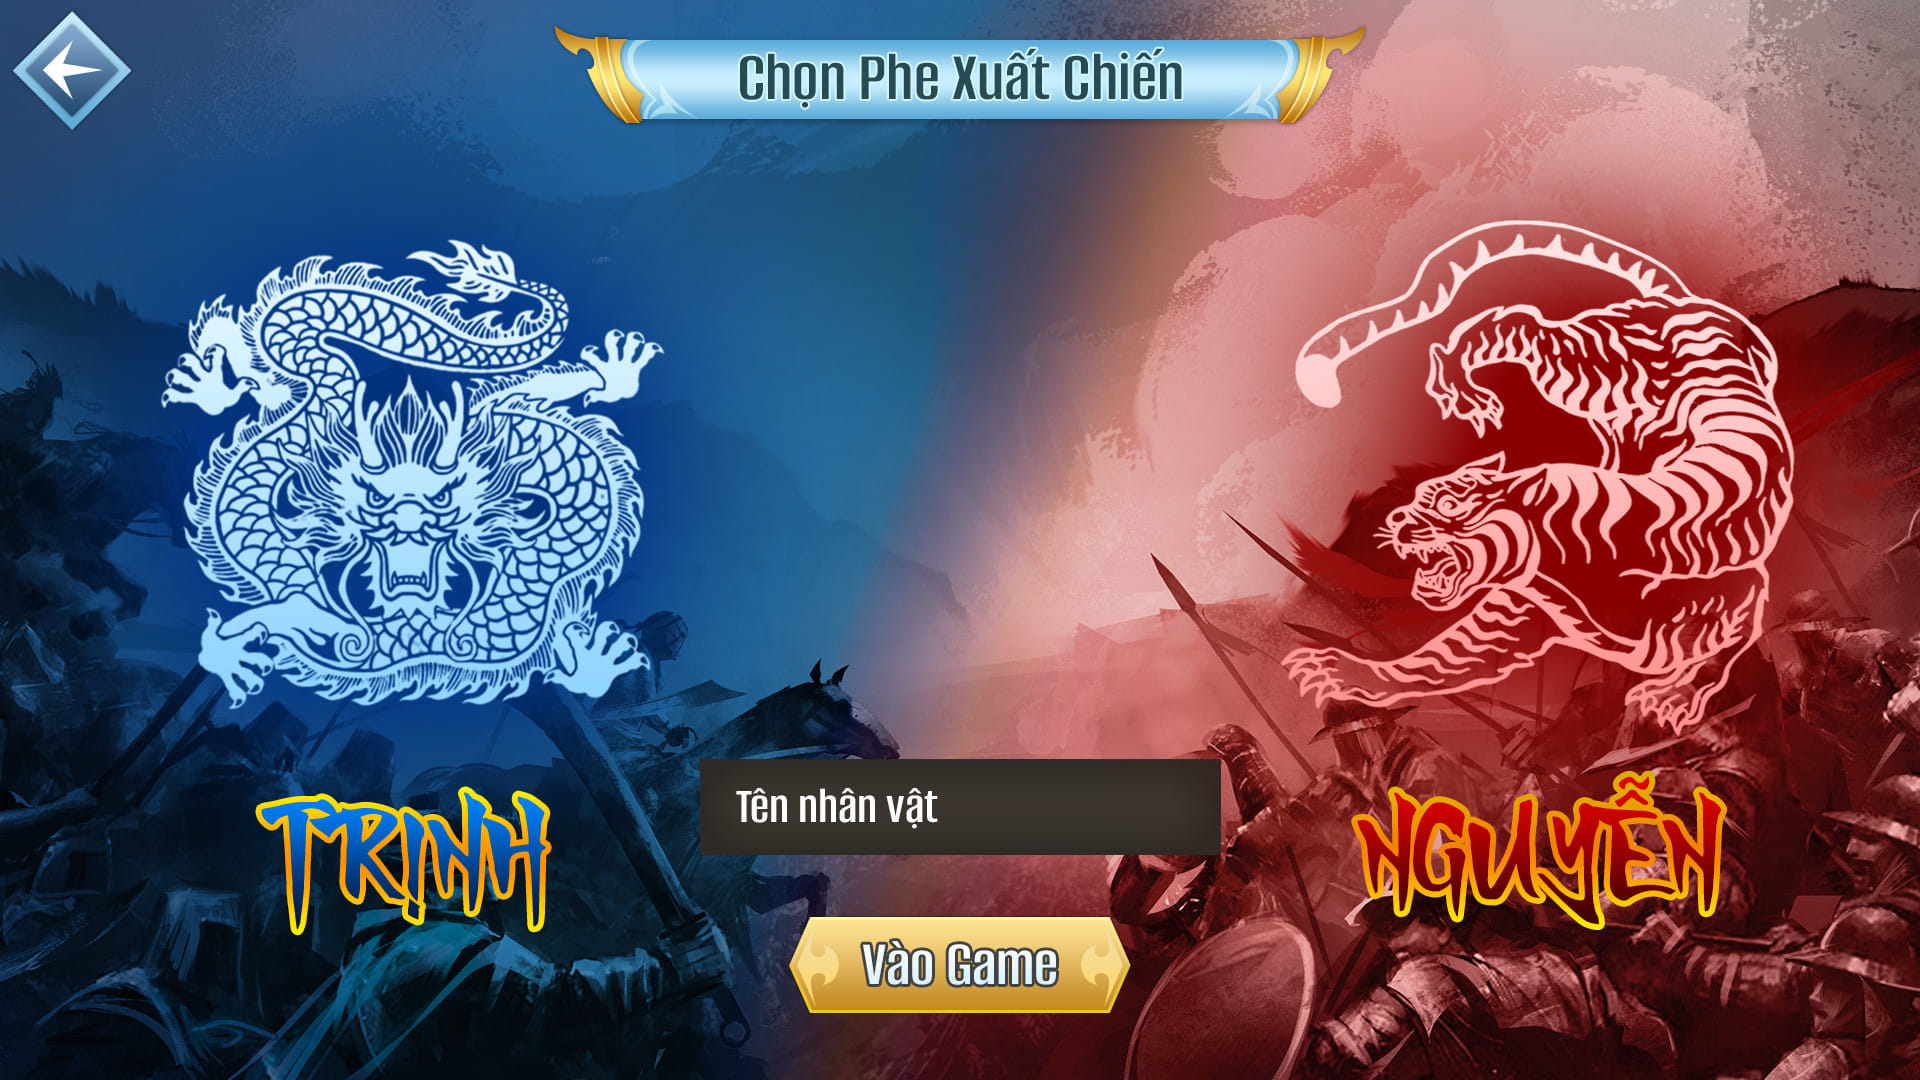 Cận cảnh MMORPG do người Việt tự phát triển, có nội dung lịch sử thời Trịnh – Nguyễn phân tranh - Ảnh 3.